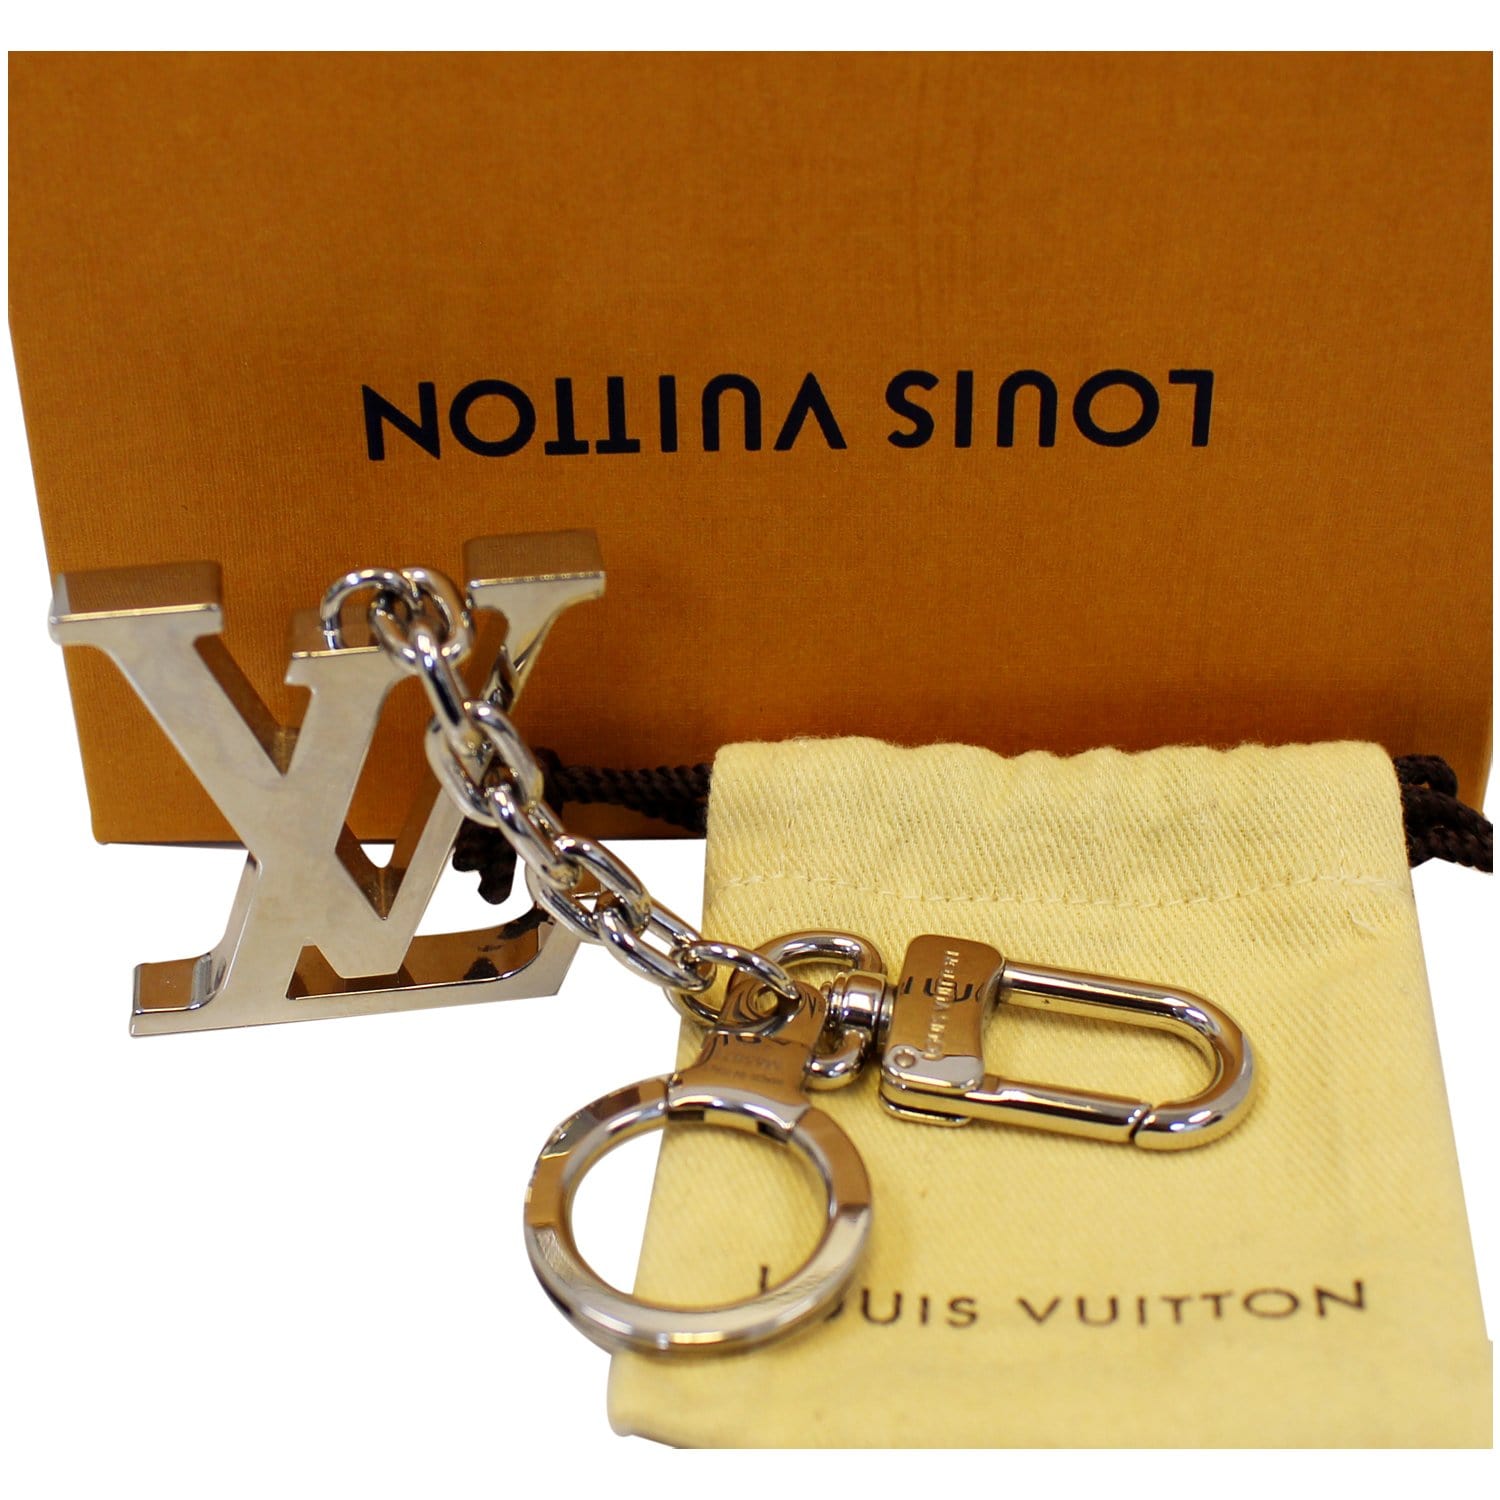 LOUIS VUITTON LV Facettes Bag Charm Key Holder Silver-US